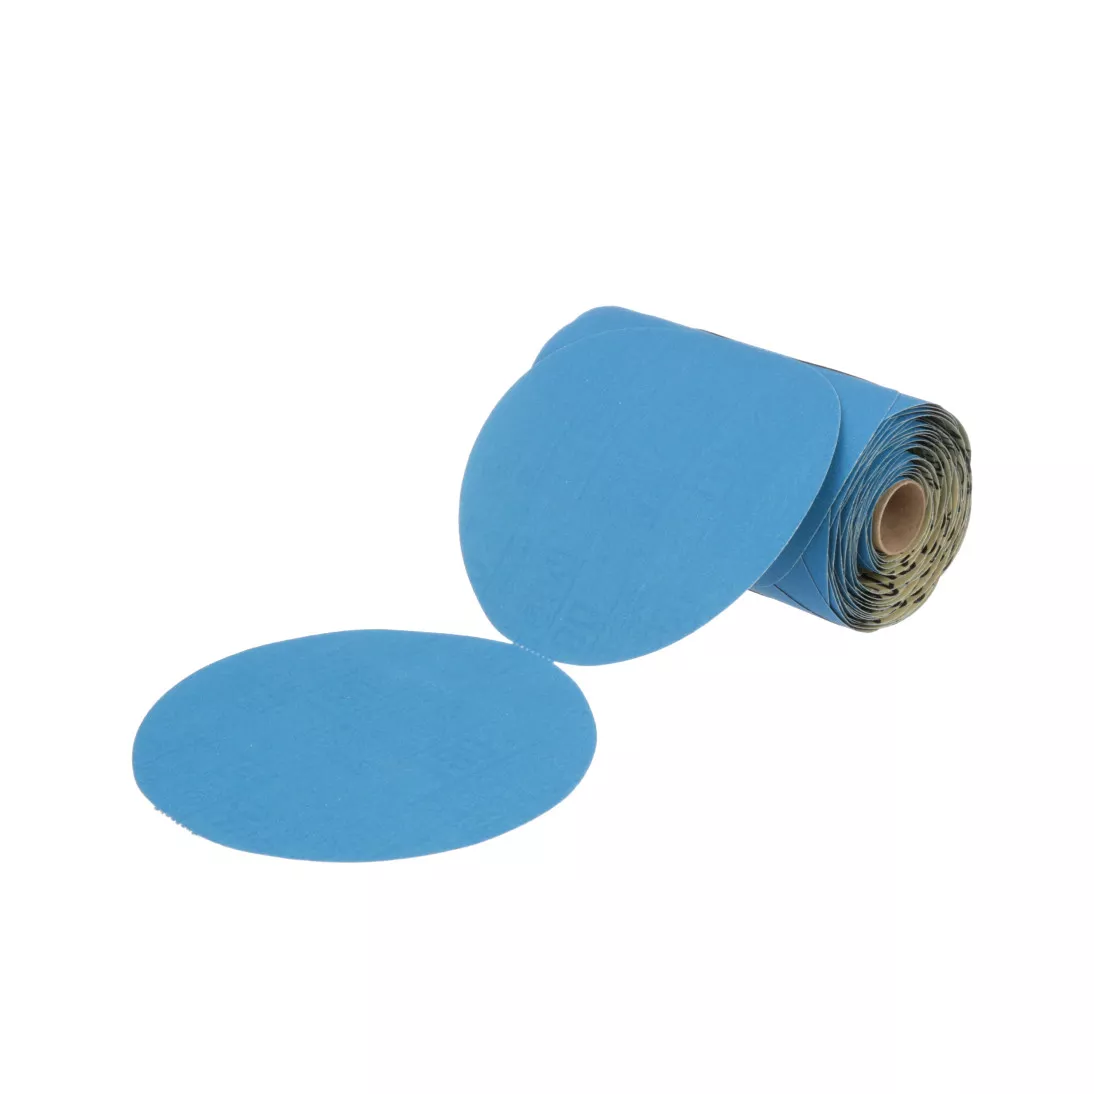 3M™ Stikit™ Blue Abrasive Disc Roll, 36206, 6 in, 180 grade, 100 discs
per roll, 5 rolls per case